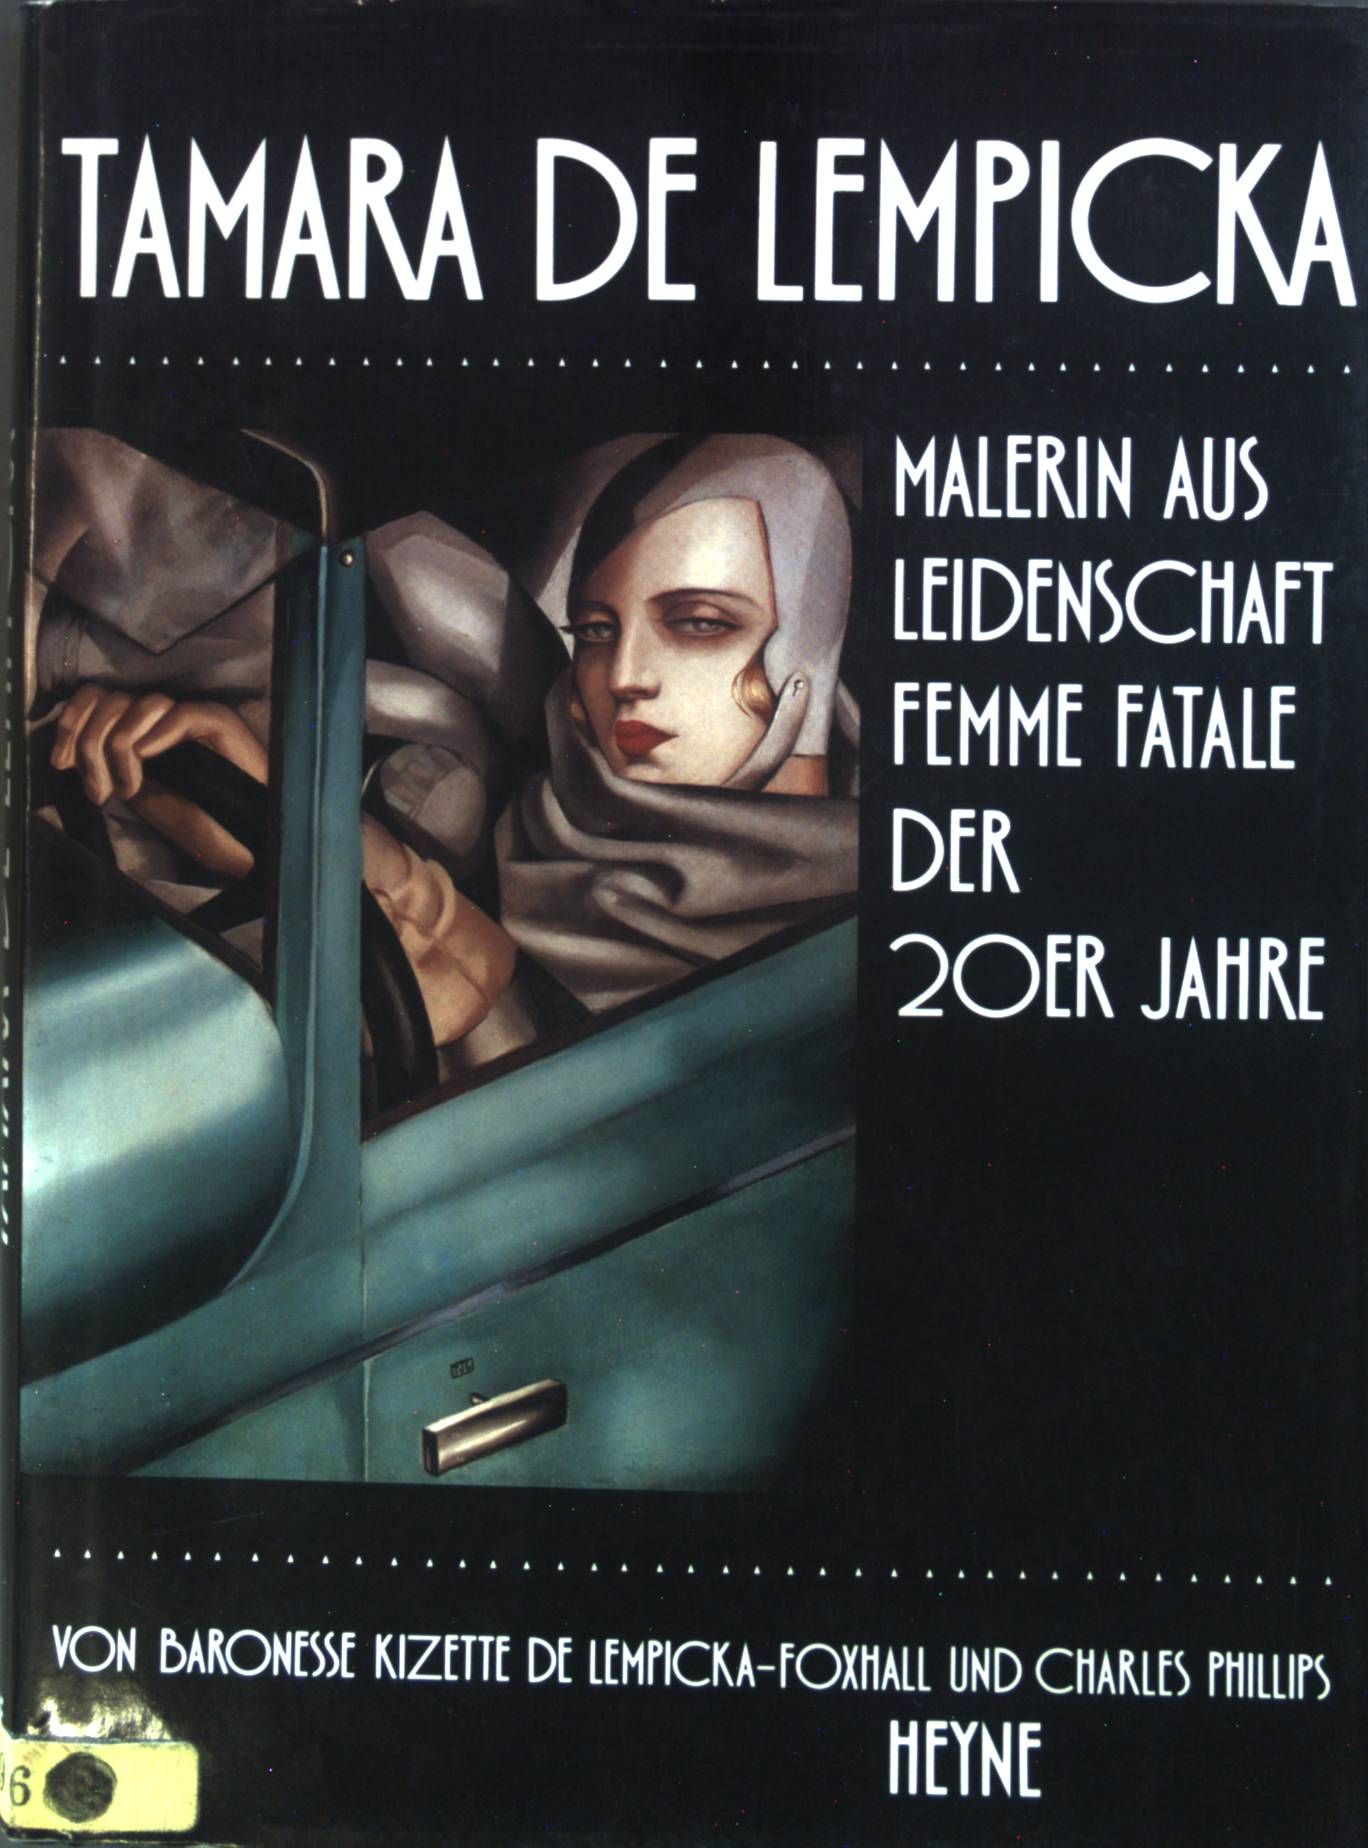 Tamara de Lempicka : Malerin aus Leidenschaft, Femme fatale d. 20er Jahre. - De Lempicka-Foxhall, Kizette und Charles Phillips